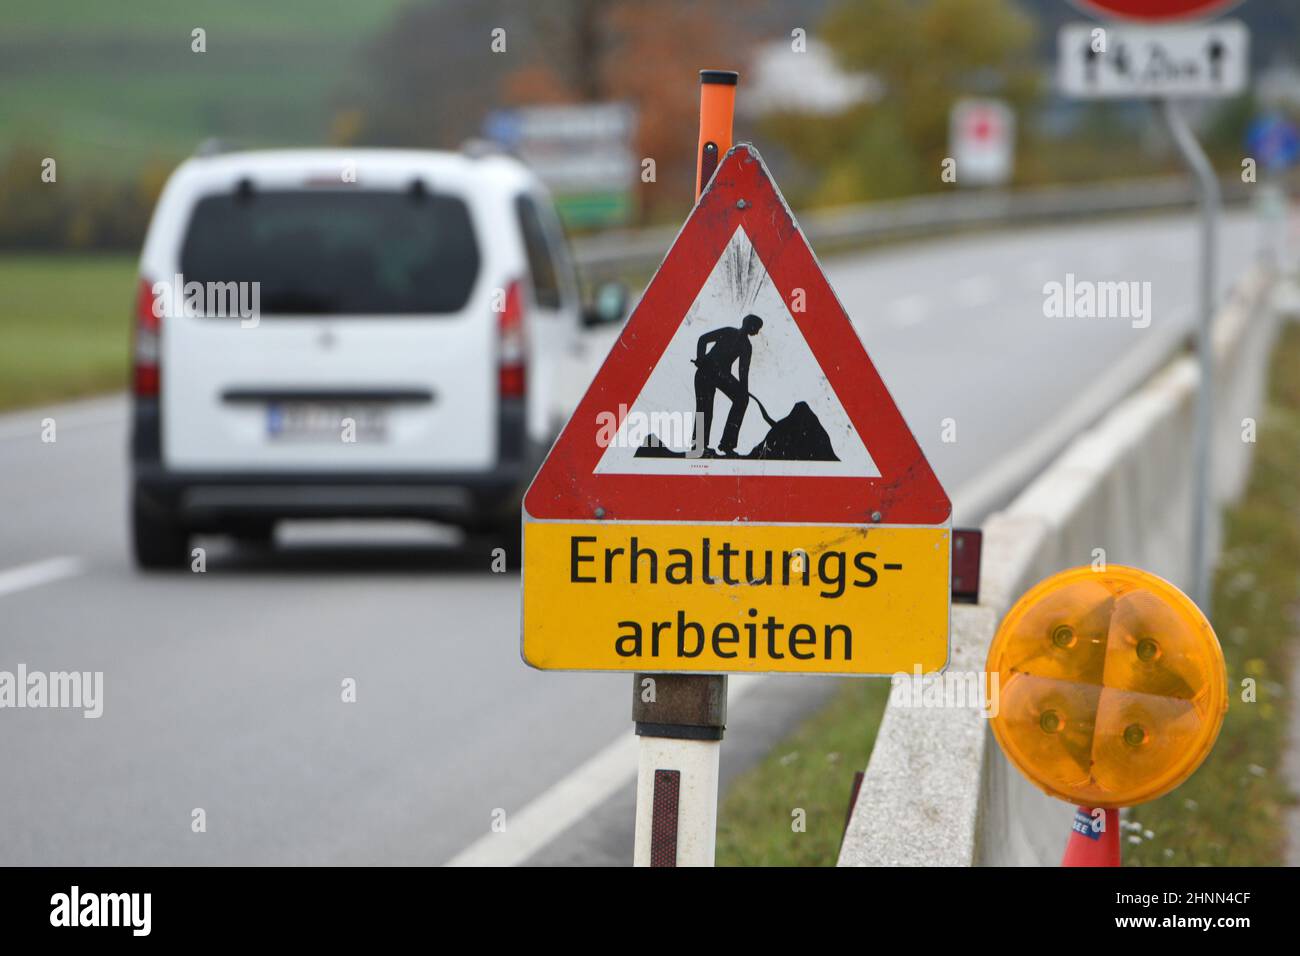 Schild 'Erhaltungsarbeiten' auf einer Straße in Österreich, Europa - Sign 'Conservation works' on a street in Austria, Europe Stock Photo